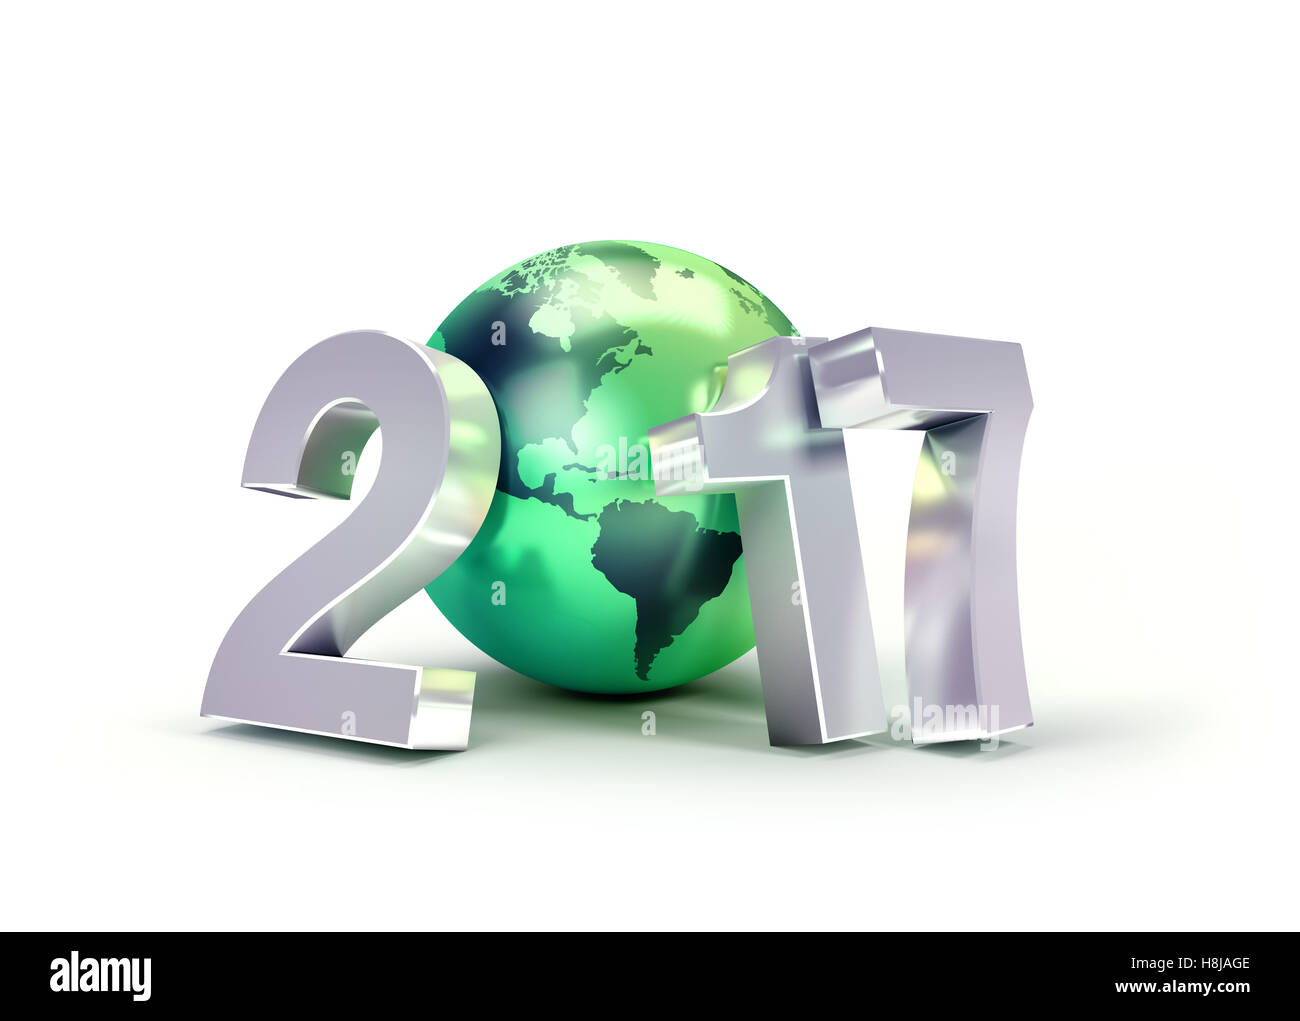 2017 Nouvelle année type composé d'un green planet earth, isolé sur blanc - 3D illustration Banque D'Images